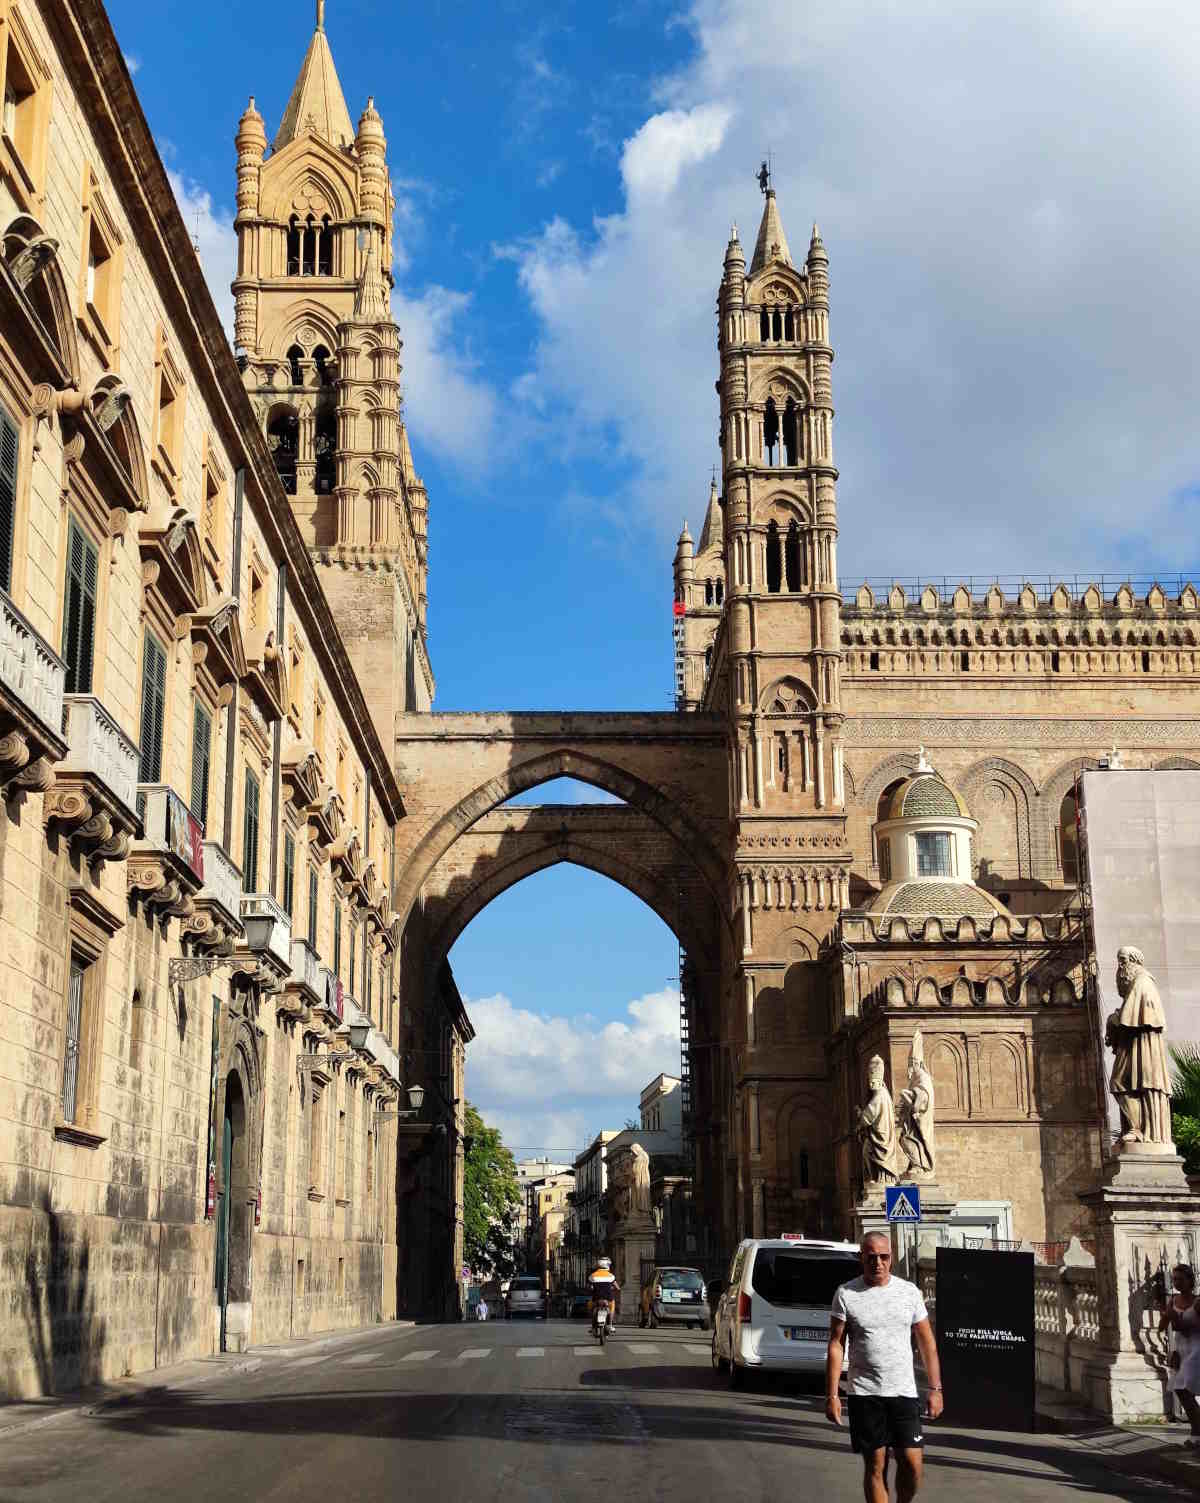 Cose imperdibili da vedere a Palermo: L'Arco-ponte della Cattedrale dedicata alla Santa Vergine Maria Assunta